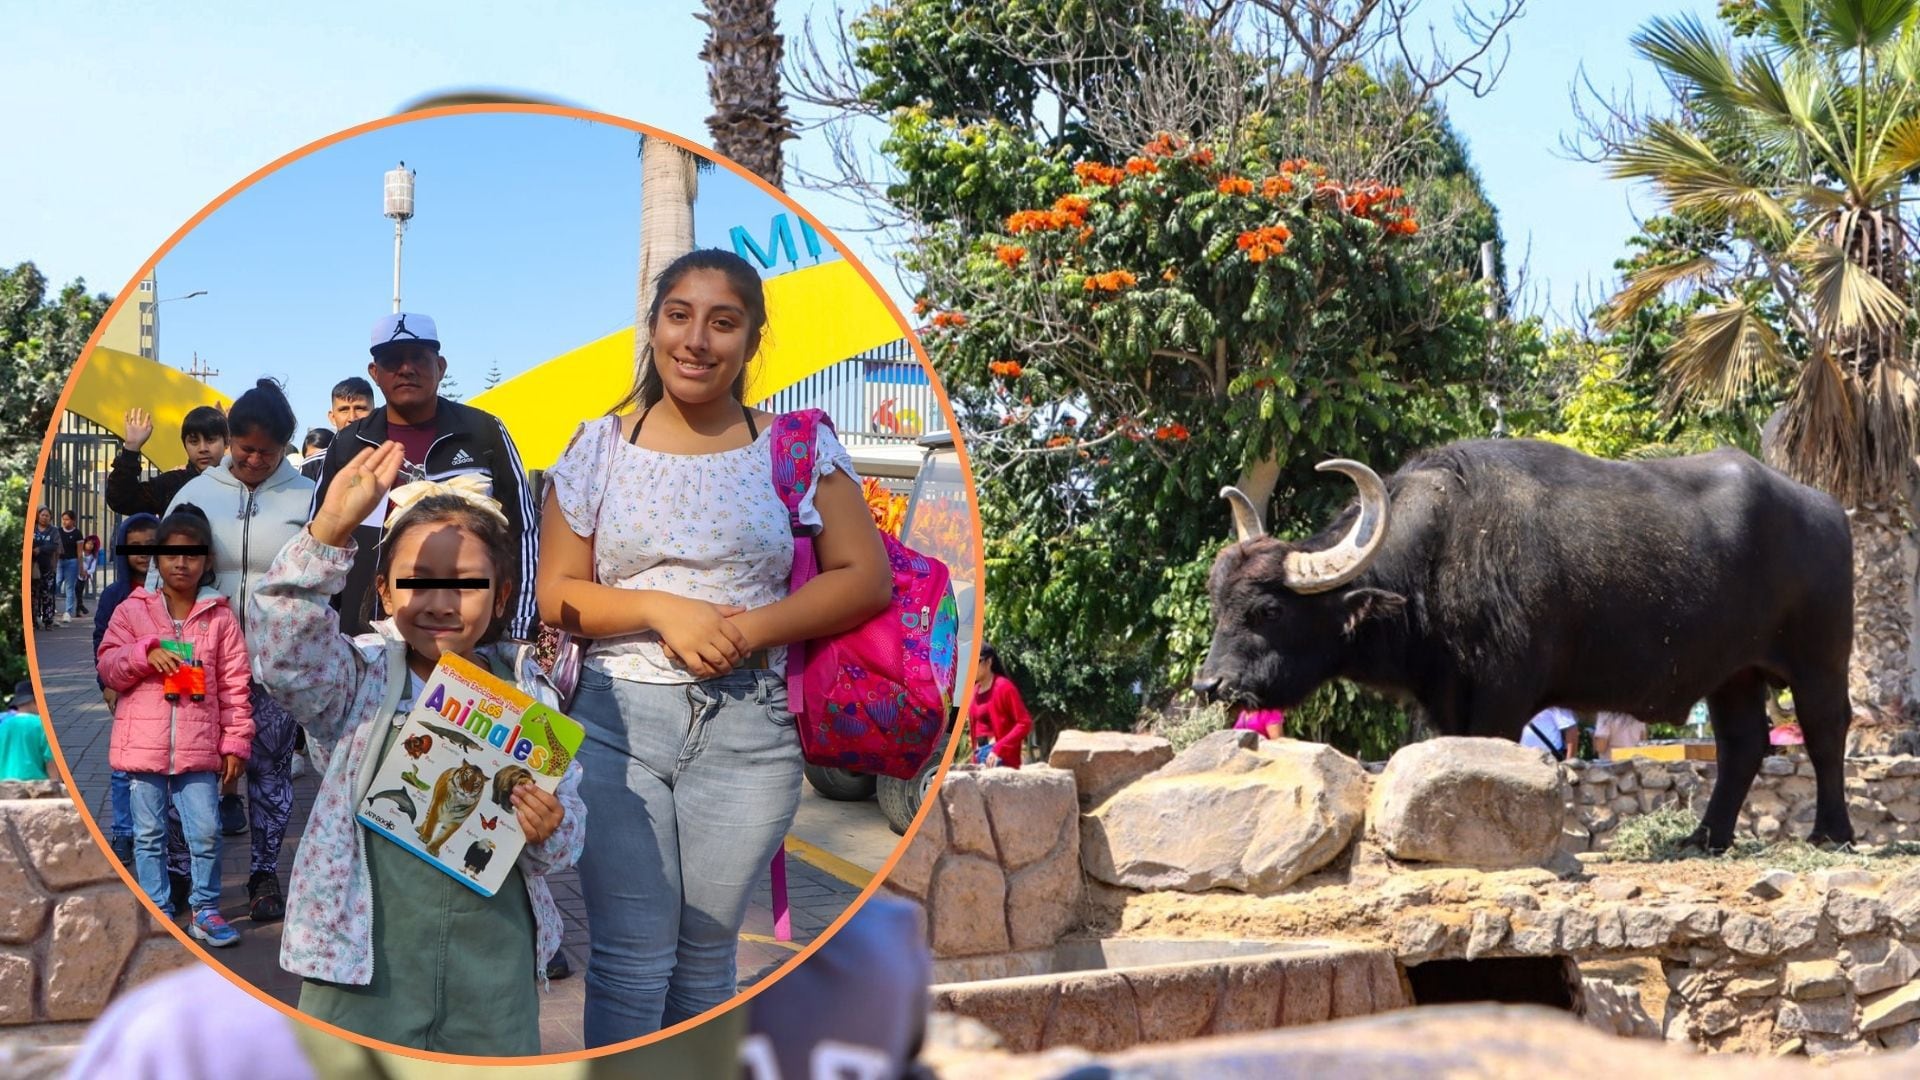 Las familias disfrutarán este domingo 12 de mayo, Día de la Madre, al interior del Parque de las Leyendas con la visita a los animales y las diversas actividades programadas.